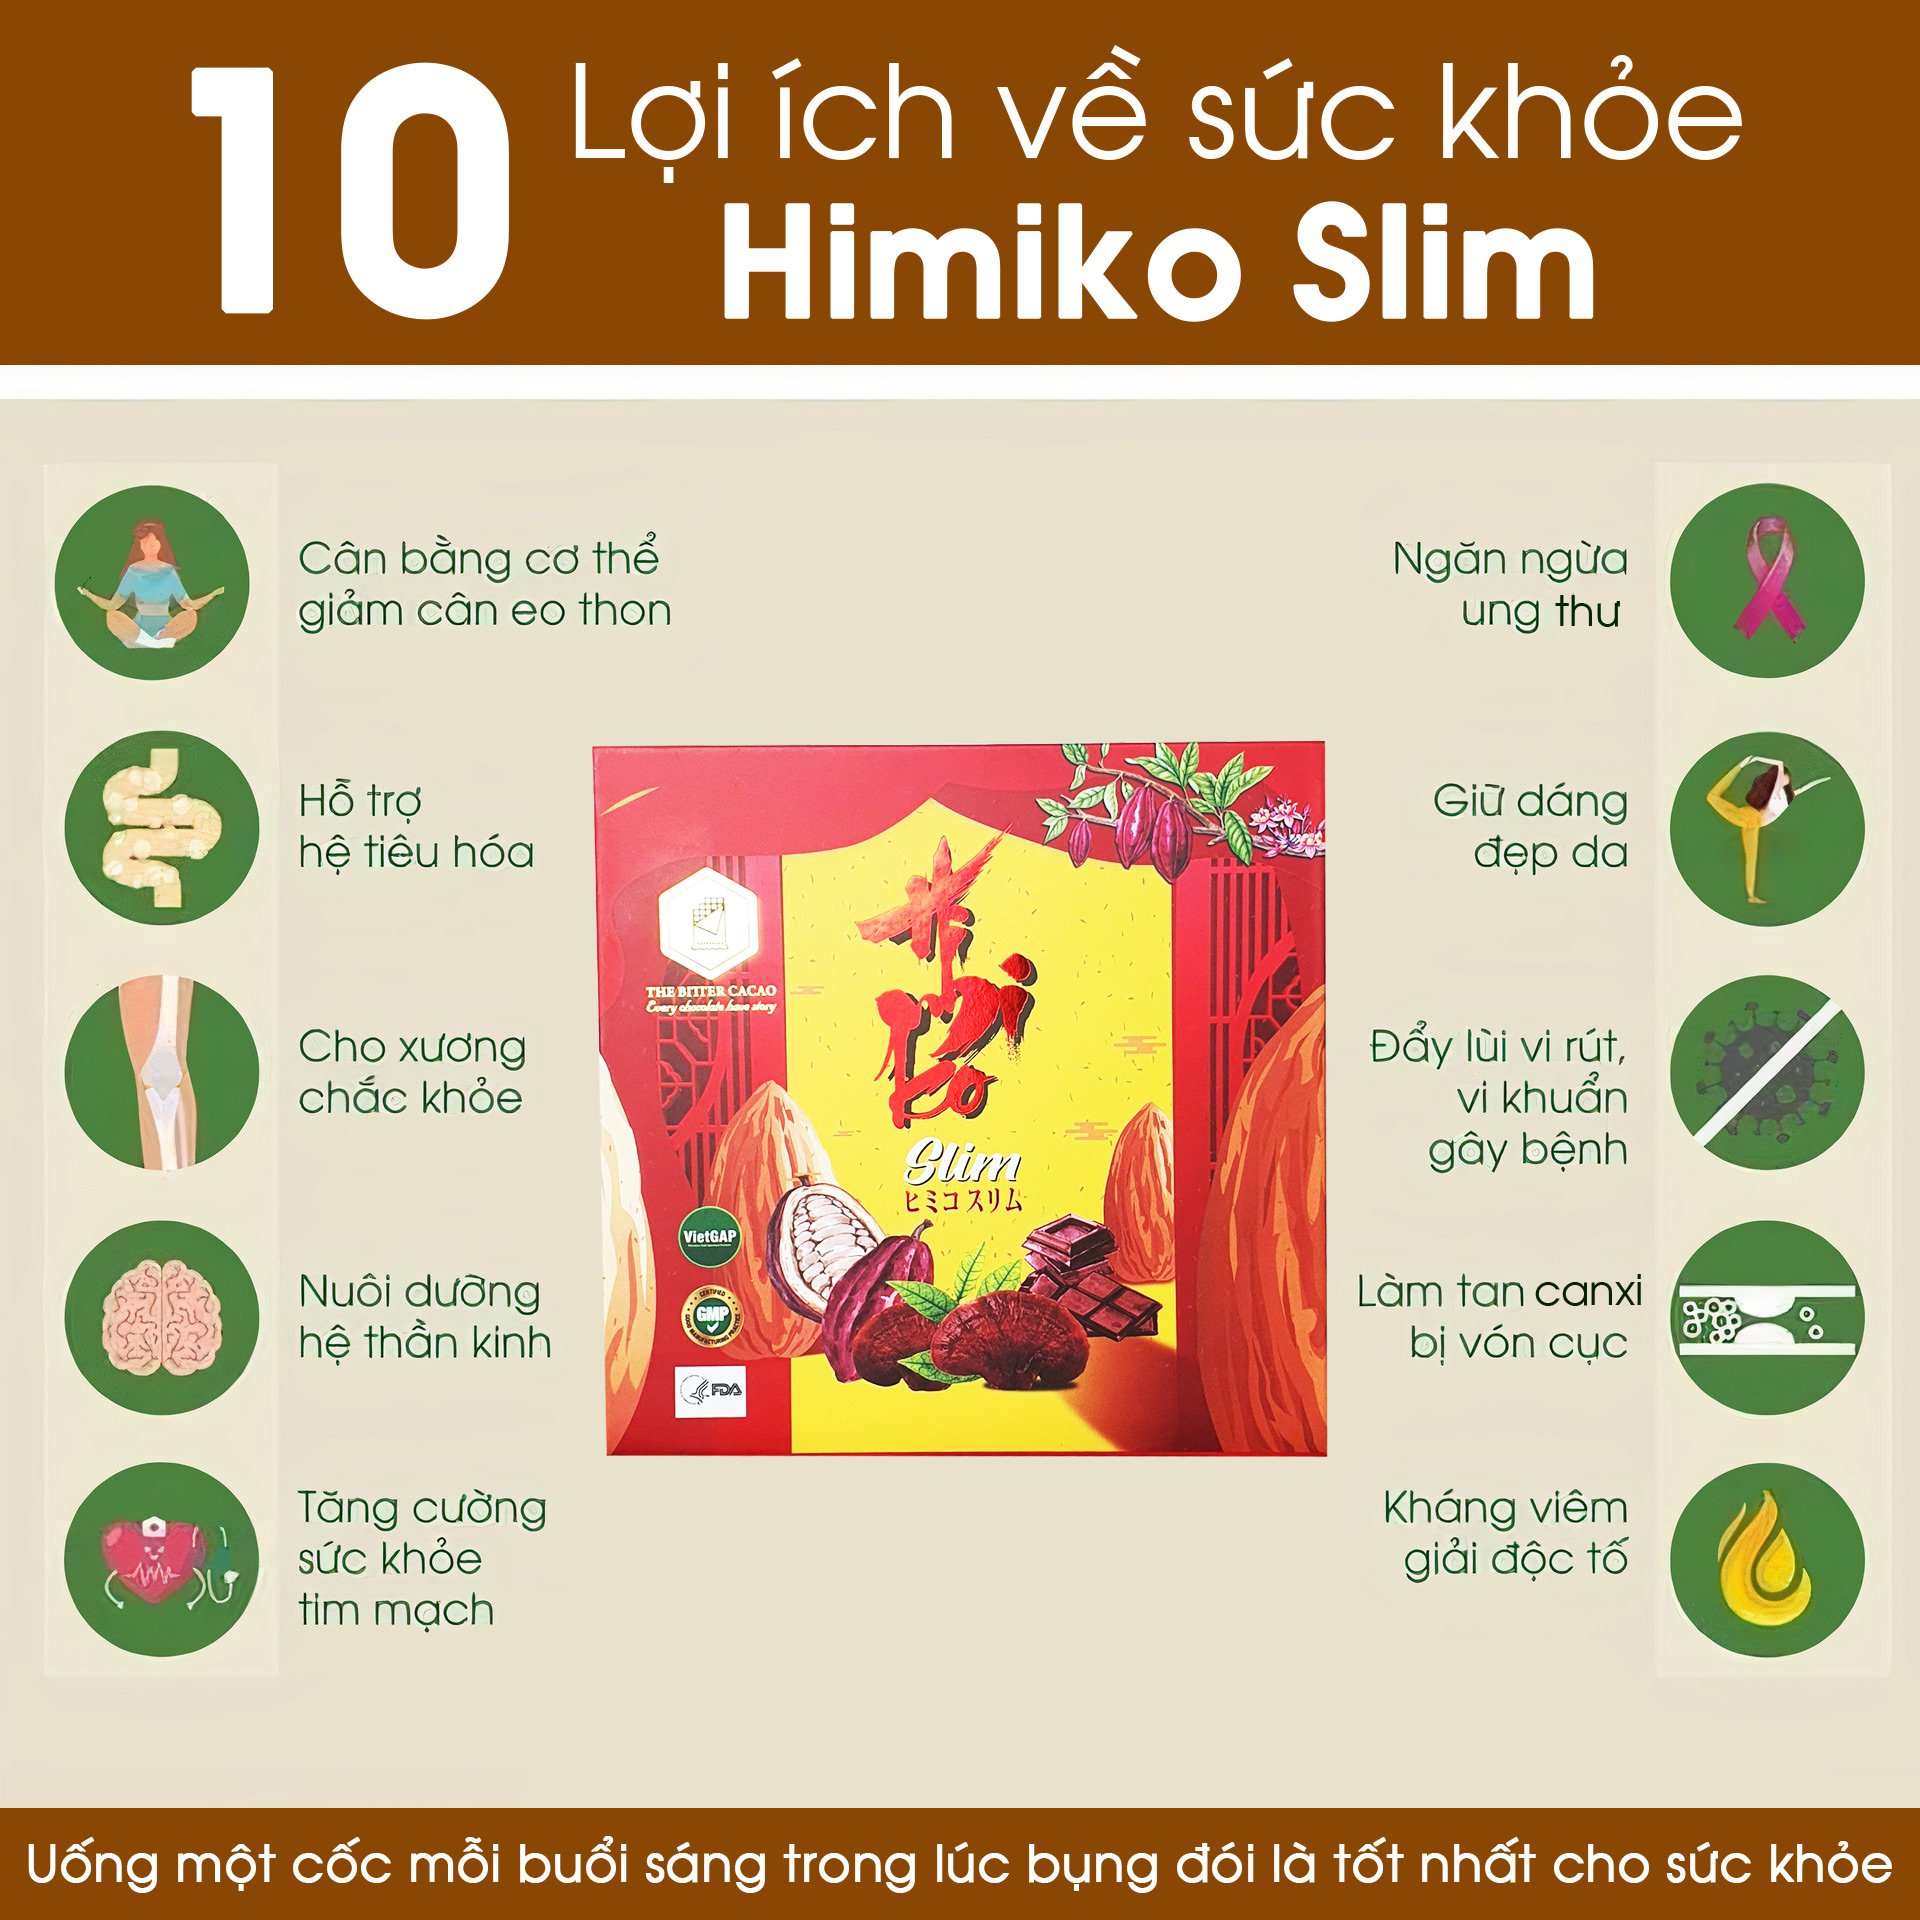 HiMiKo Slim dinh dưỡng giảm cân hàng chính hãng